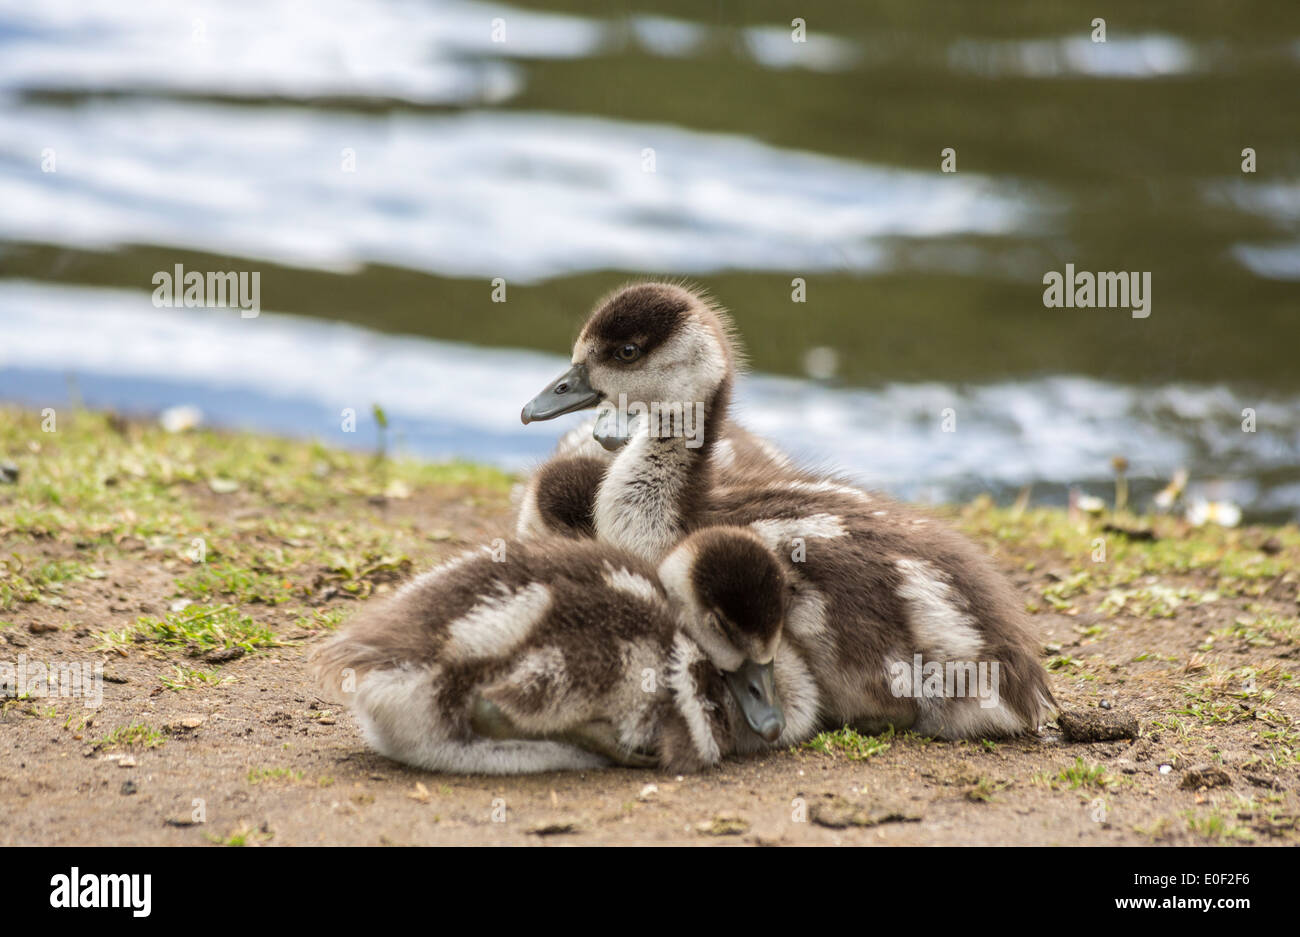 Jolies jeunes oisons Egyptian goose (Alopochen aegyptiaca), oies, snuggle ensemble à Isabella Plantation, Richmond Park, London, UK Banque D'Images